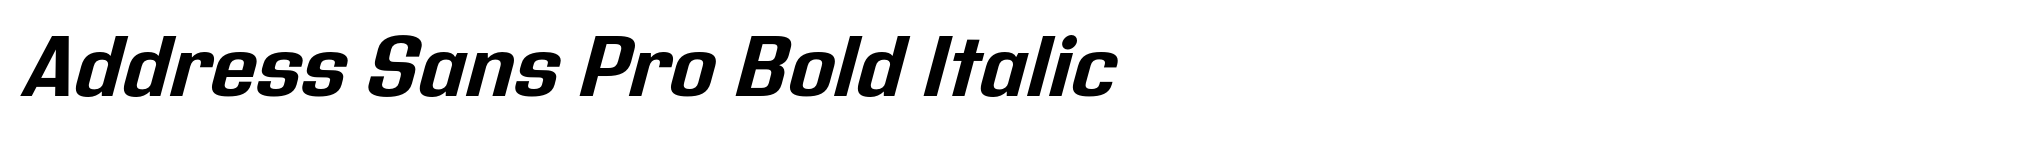 Address Sans Pro Bold Italic image